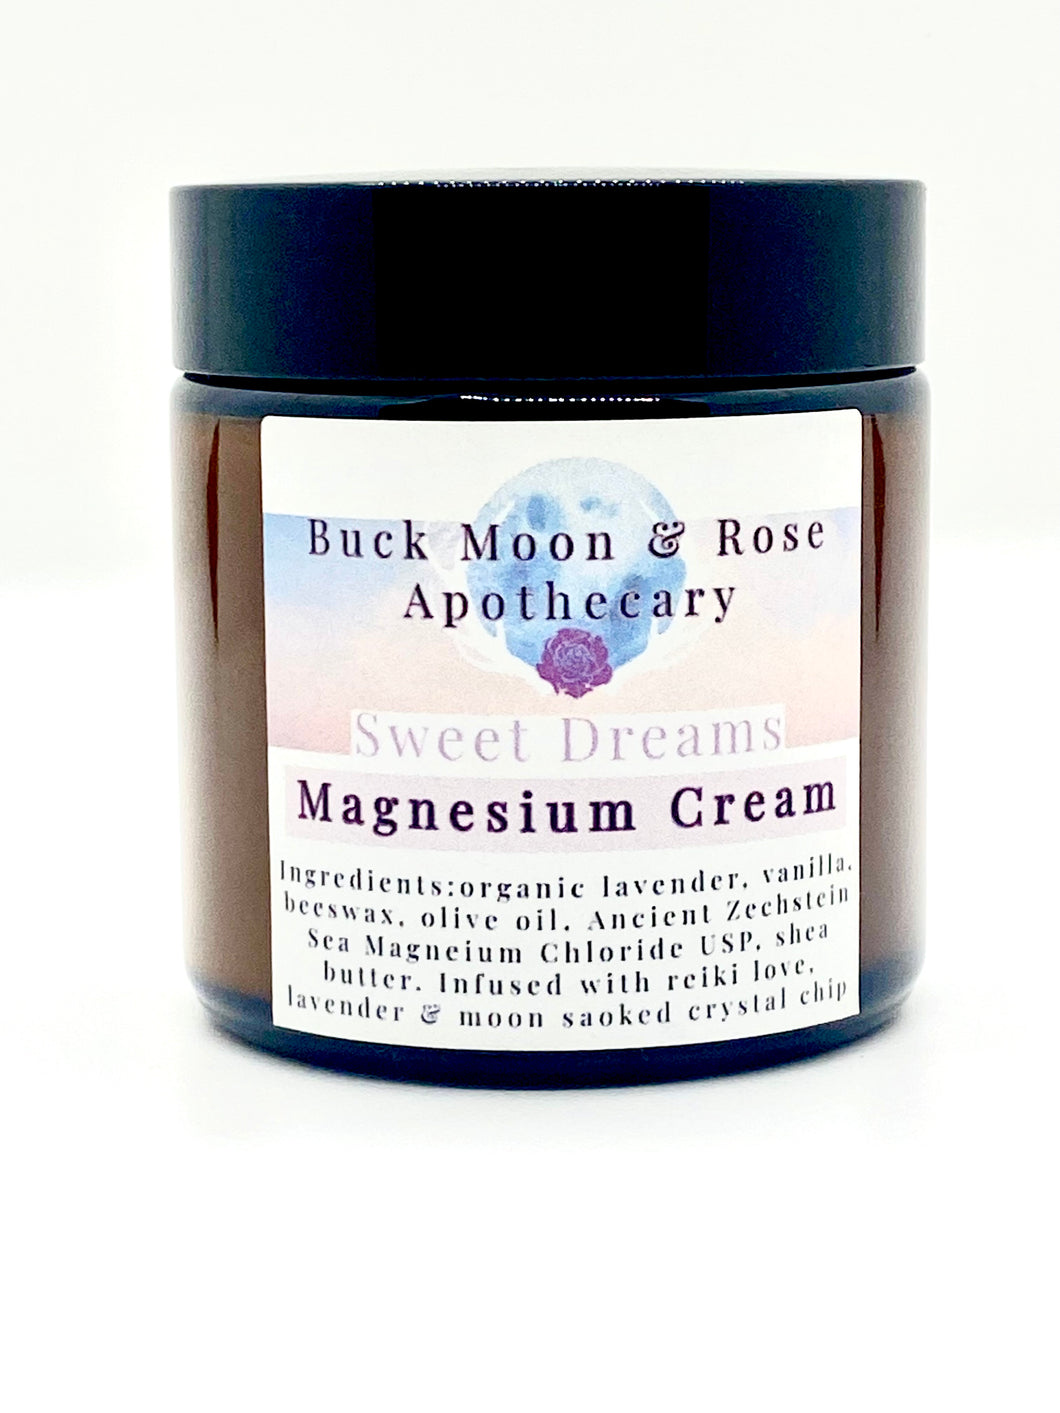 Sweet Dreams Magnesium Cream